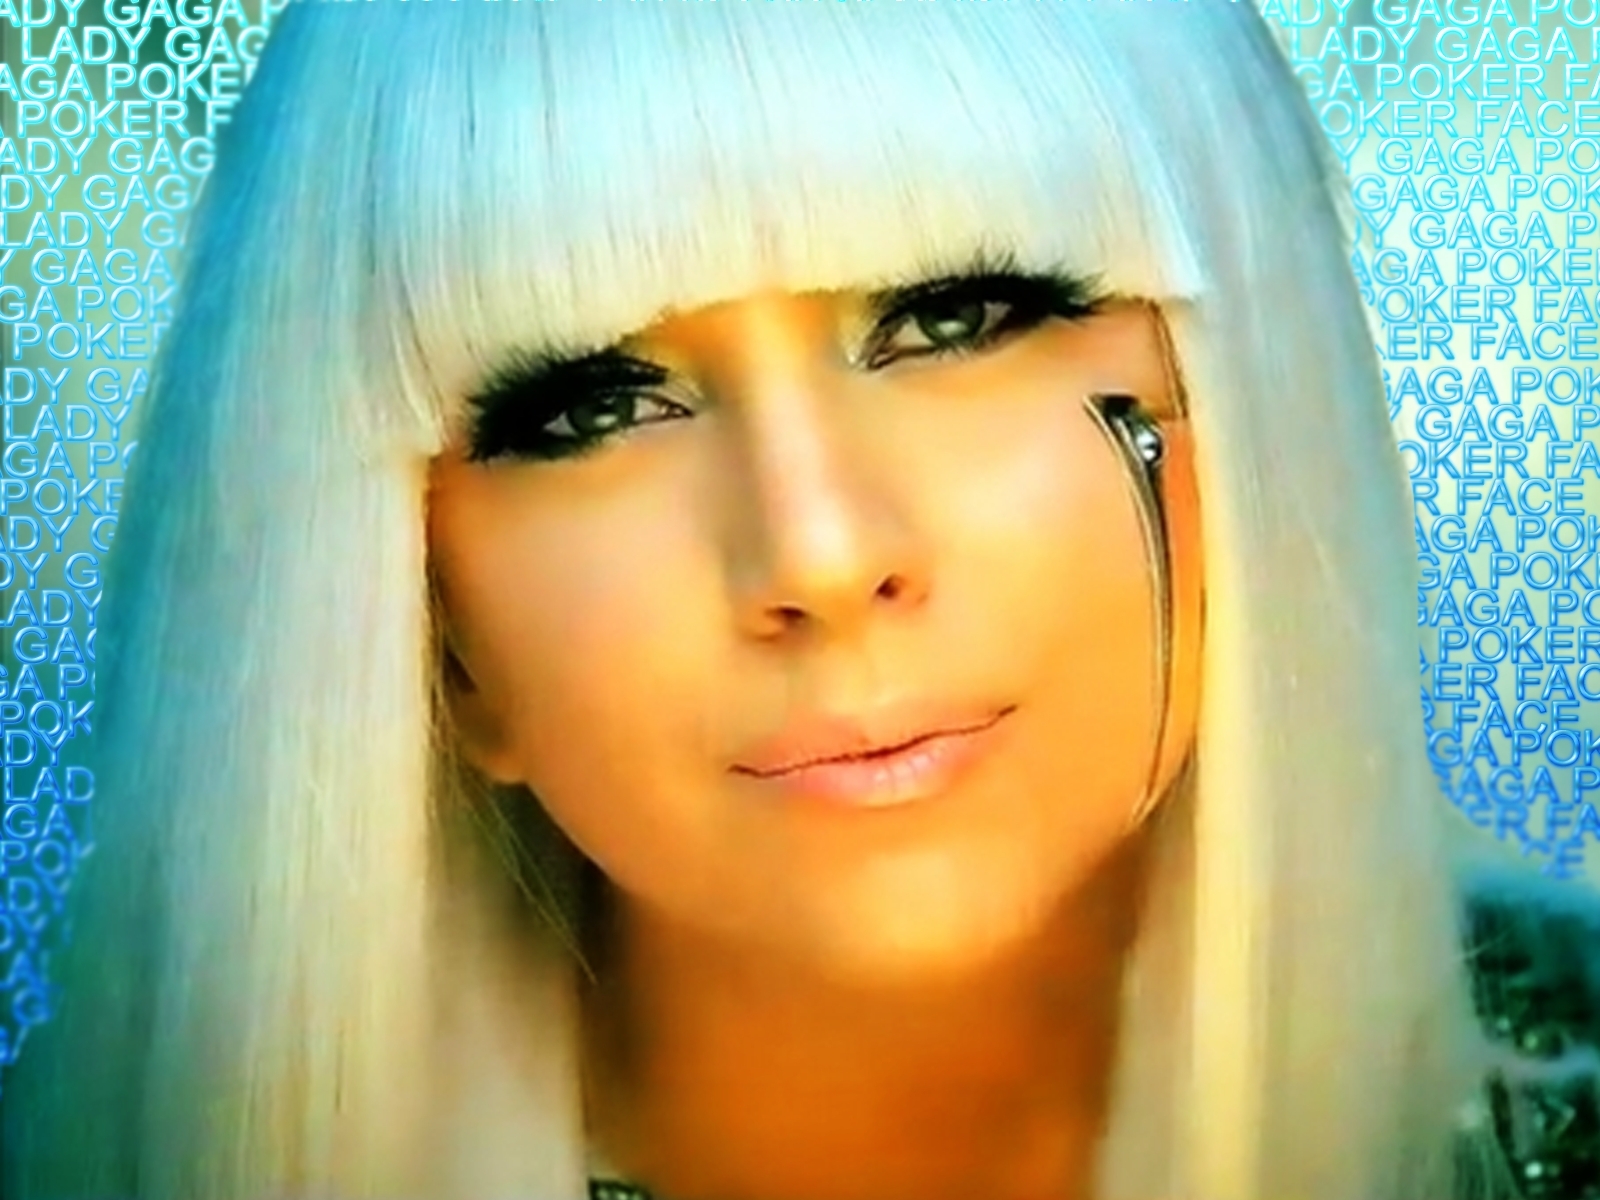 Lady Gaga - Images